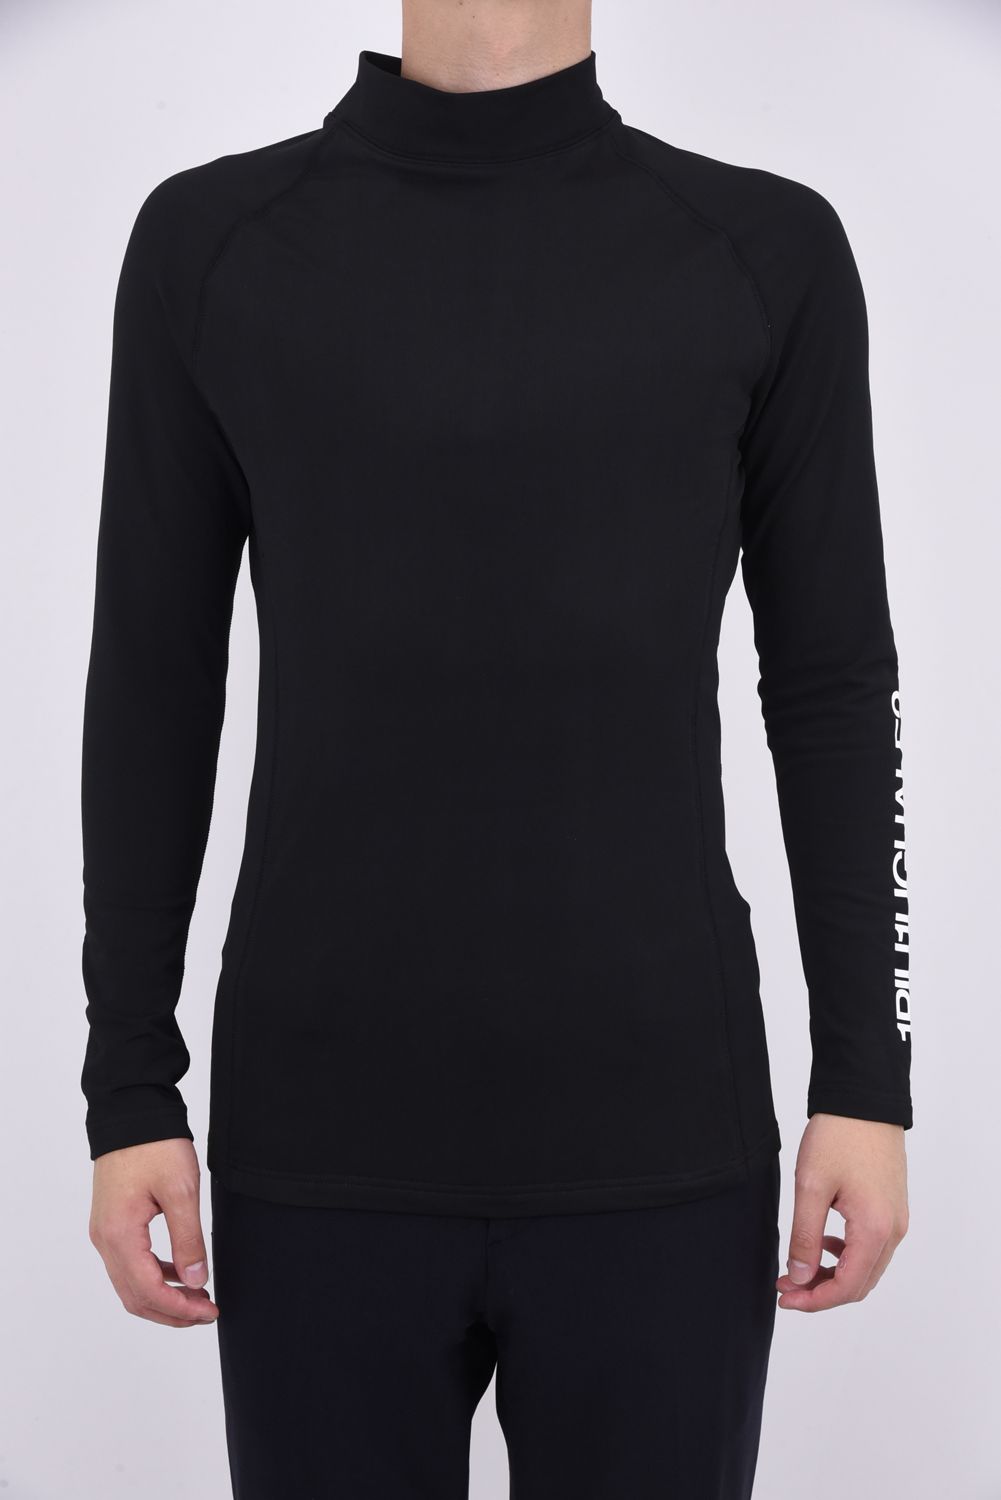 1PIU1UGUALE3 GOLF - UNDER SHIRTS / ブランドロゴ モックネック Tシャツ ブラック | GOSSIP GOLF